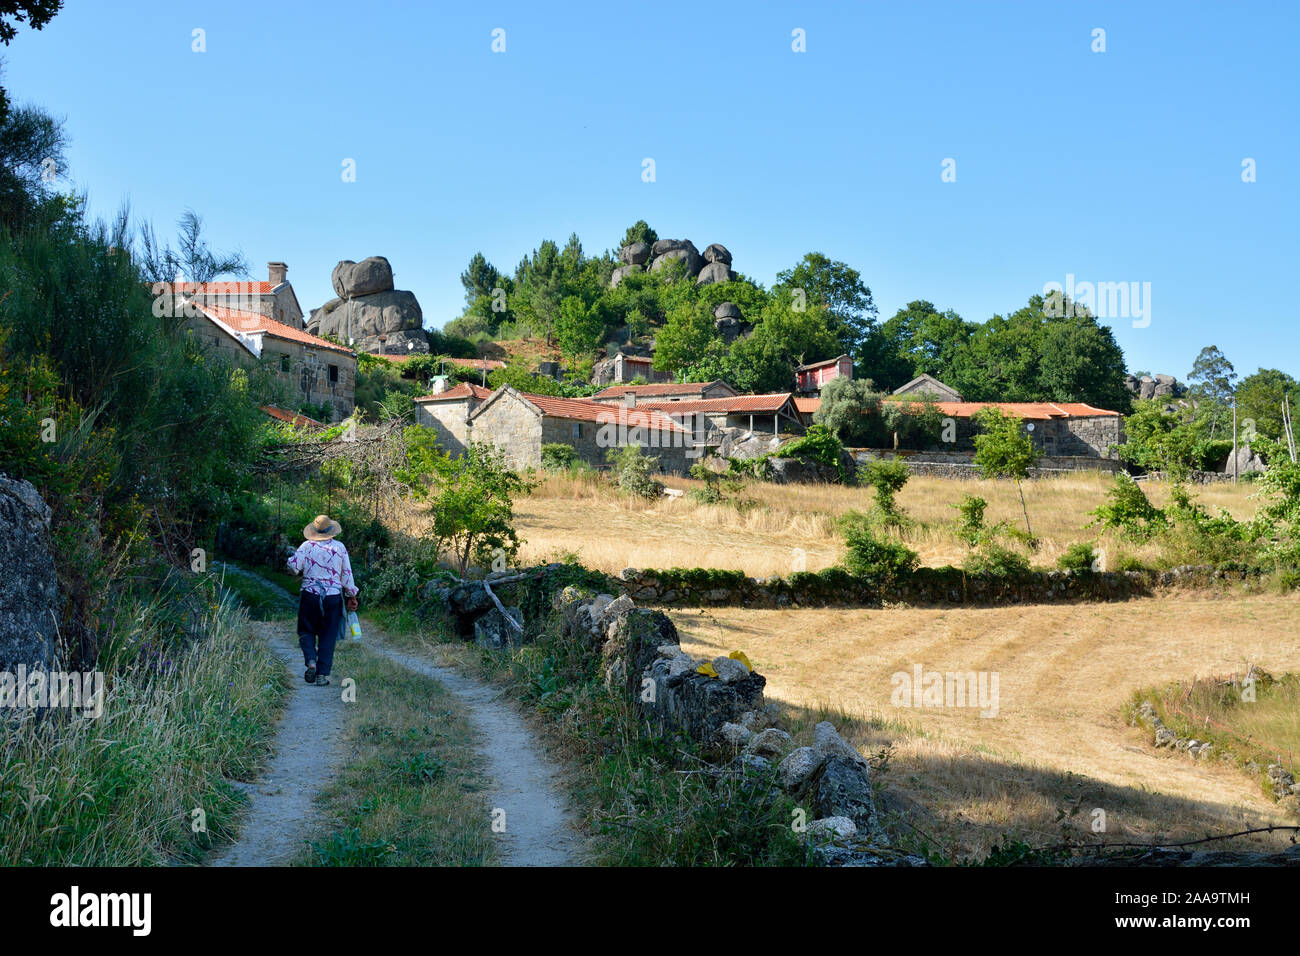 Le village rural de Sirvozelo. Le parc national de Peneda Gerês, Portugal Banque D'Images